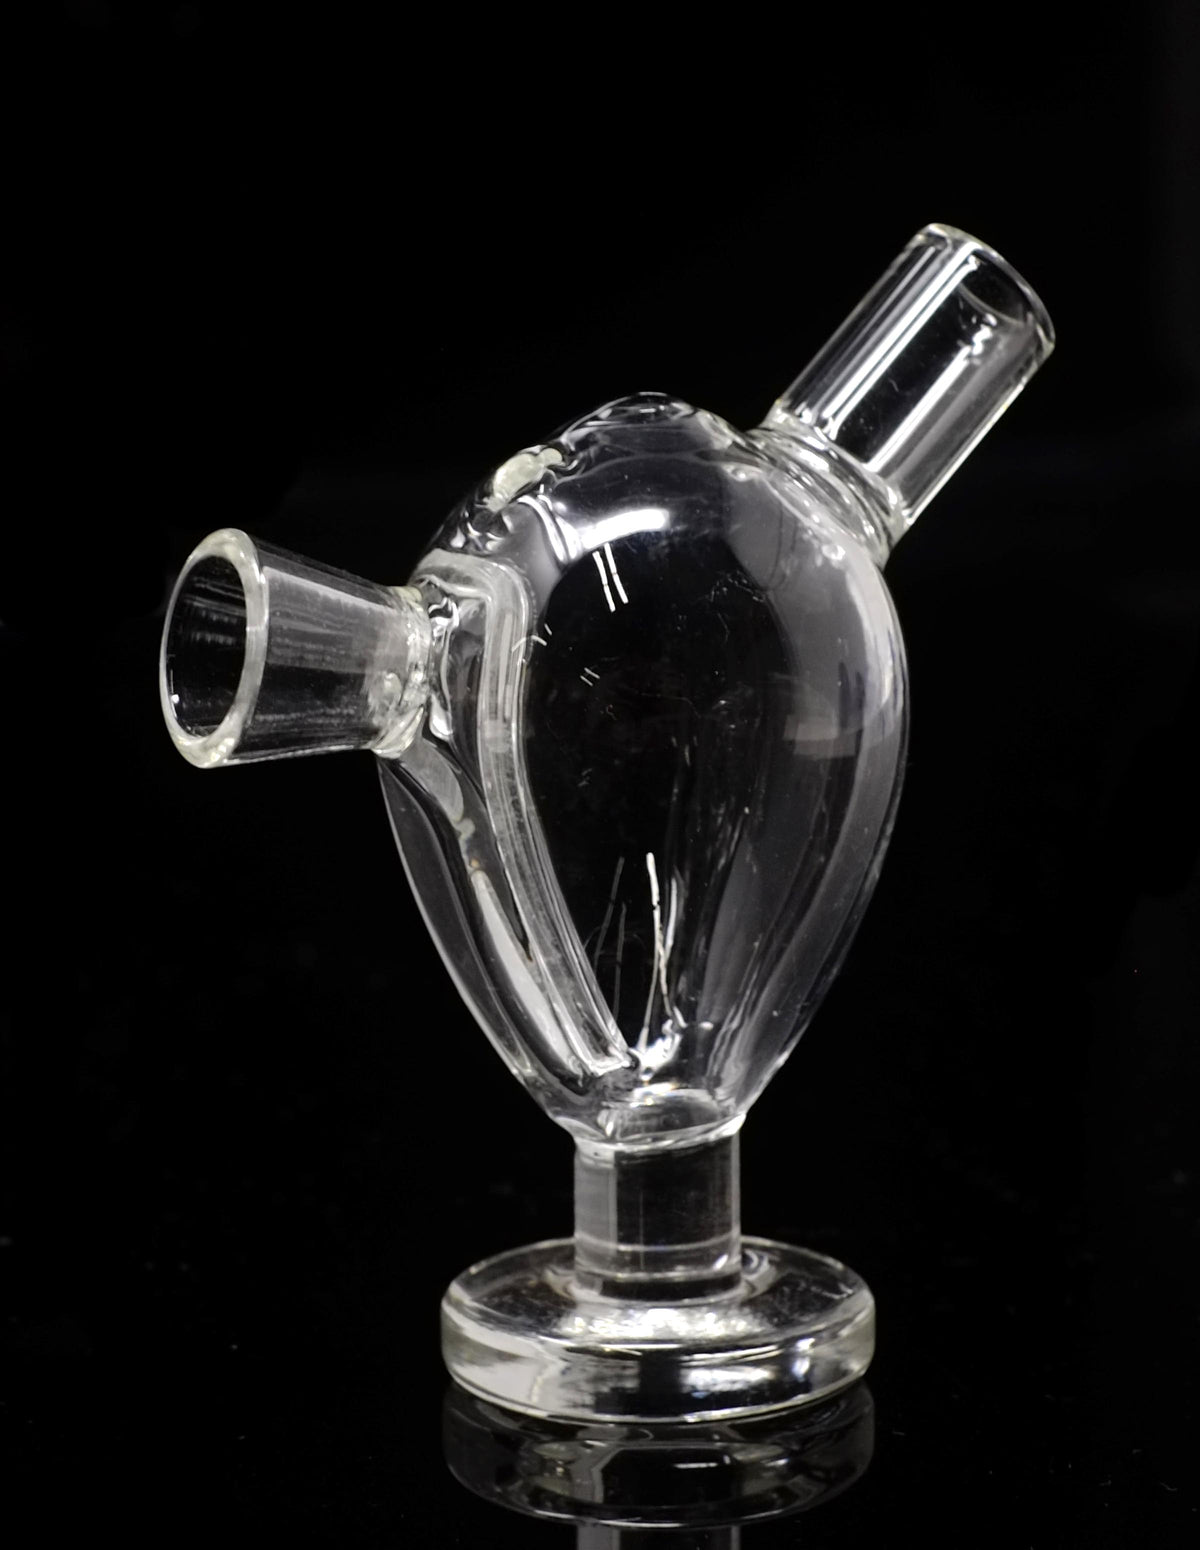 2.5" Martian Blunt mini glass bubbler pipe